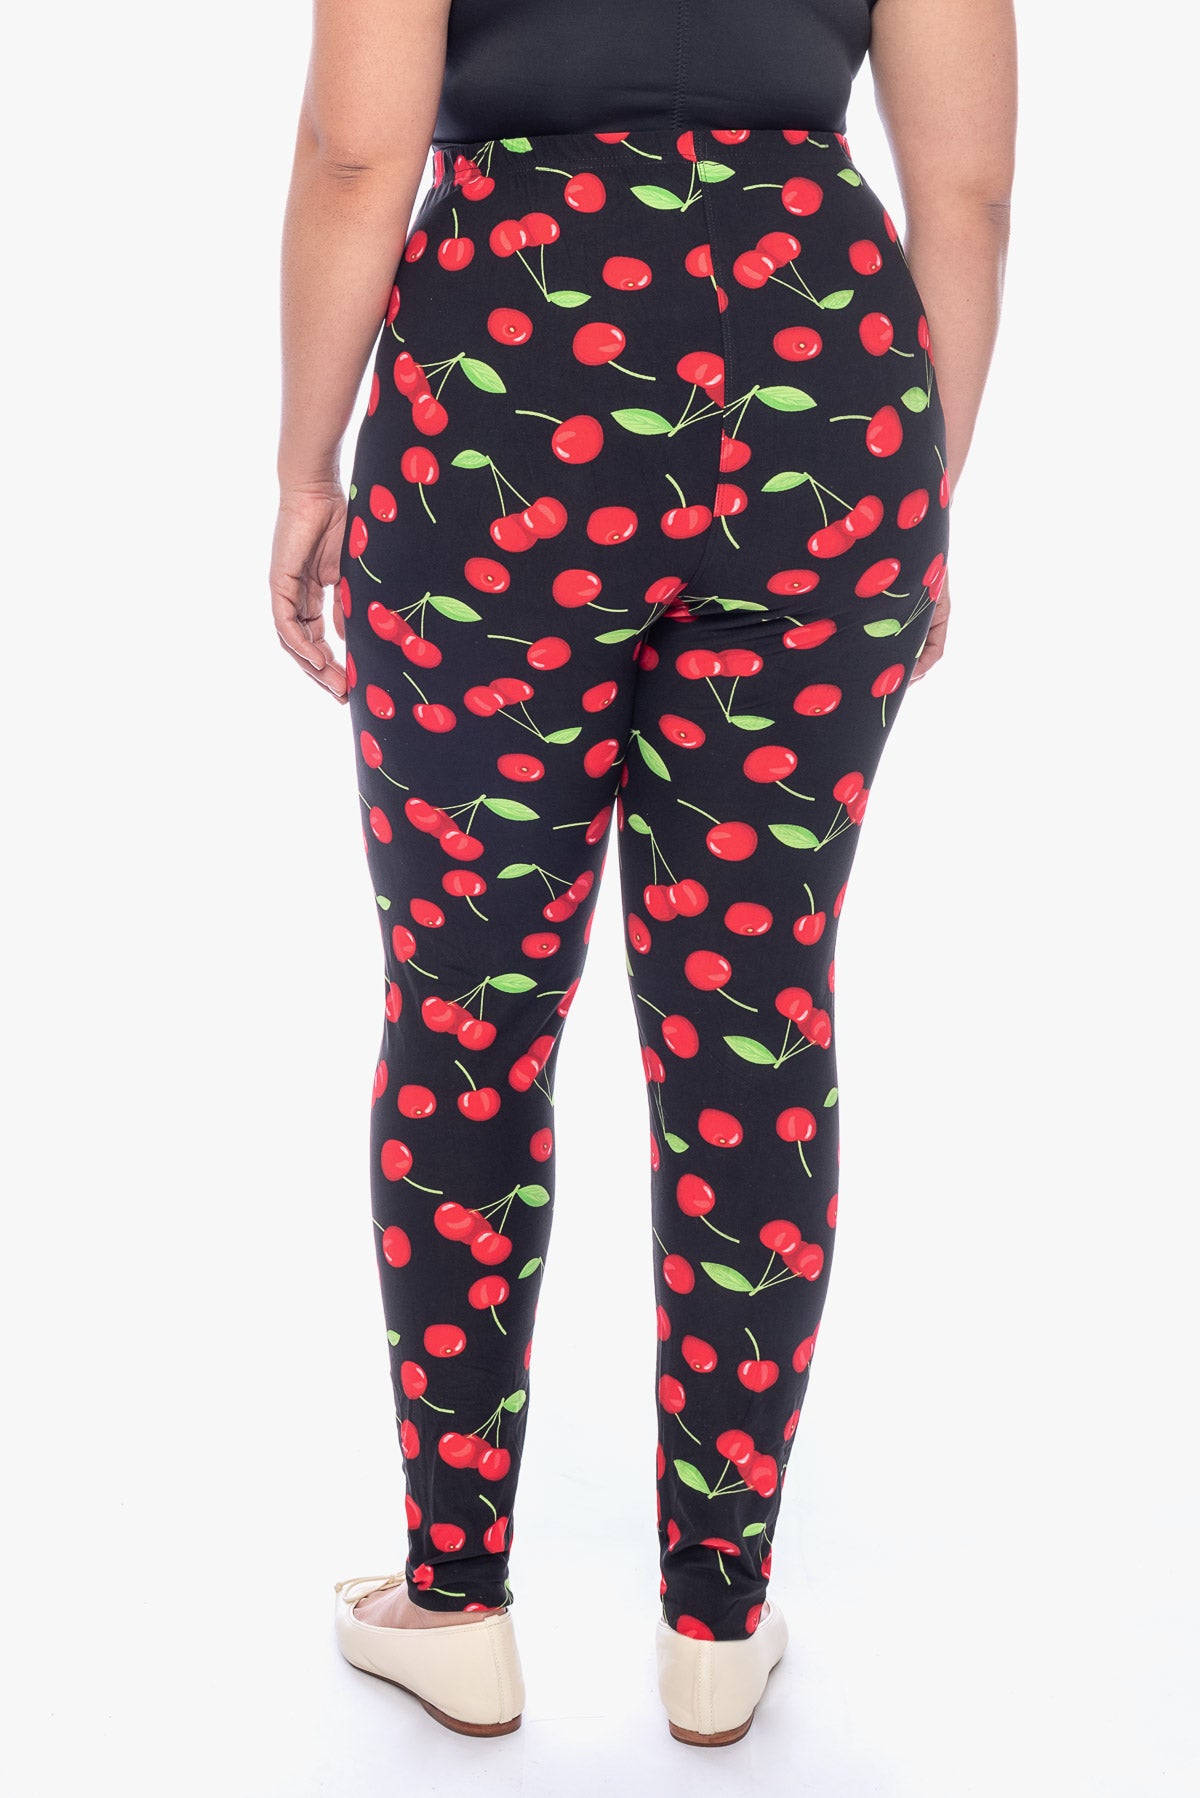 LILLY cherries printed leggings